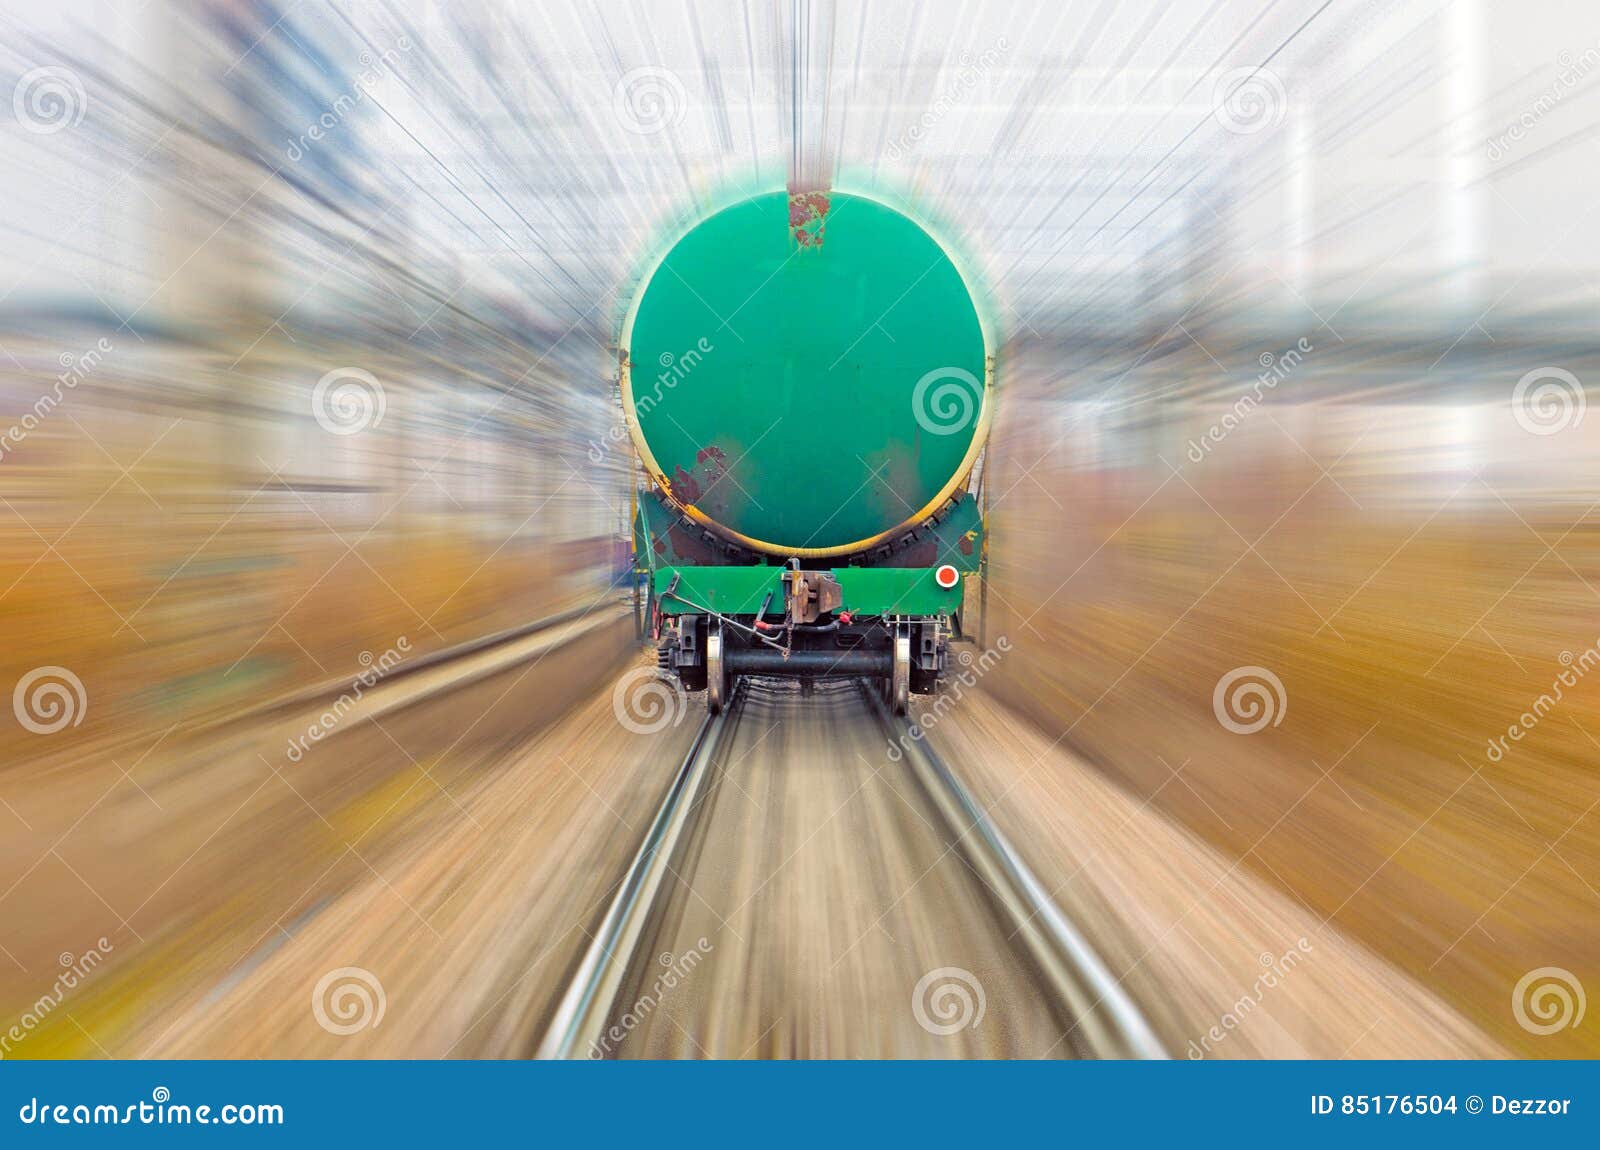 Звук движущегося поезда. Грузовой поезд Измайлово. Мяч неподвижно лежавший на полу вагона движущегося поезда. Столик в вагоне.